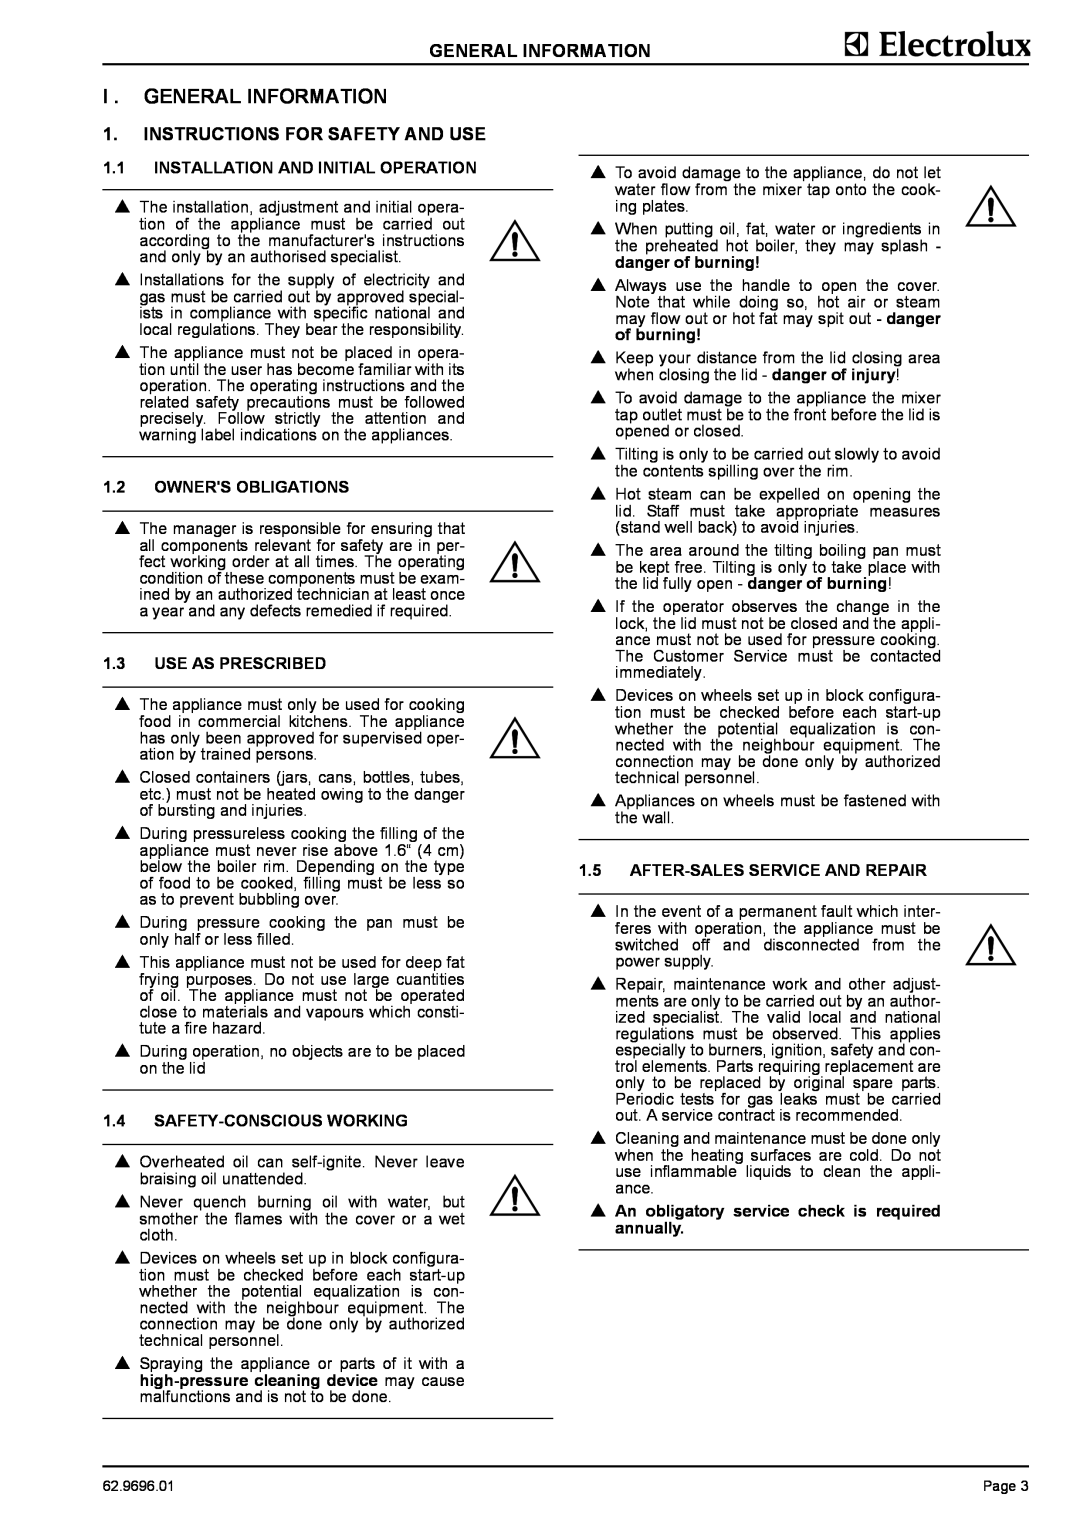 Electrolux GXXHOEOOOO, GXYEOEOOOO, GXXBOEOOOO, GXYHOEOOOO manual I . General Information, Instructions For Safety And Use 